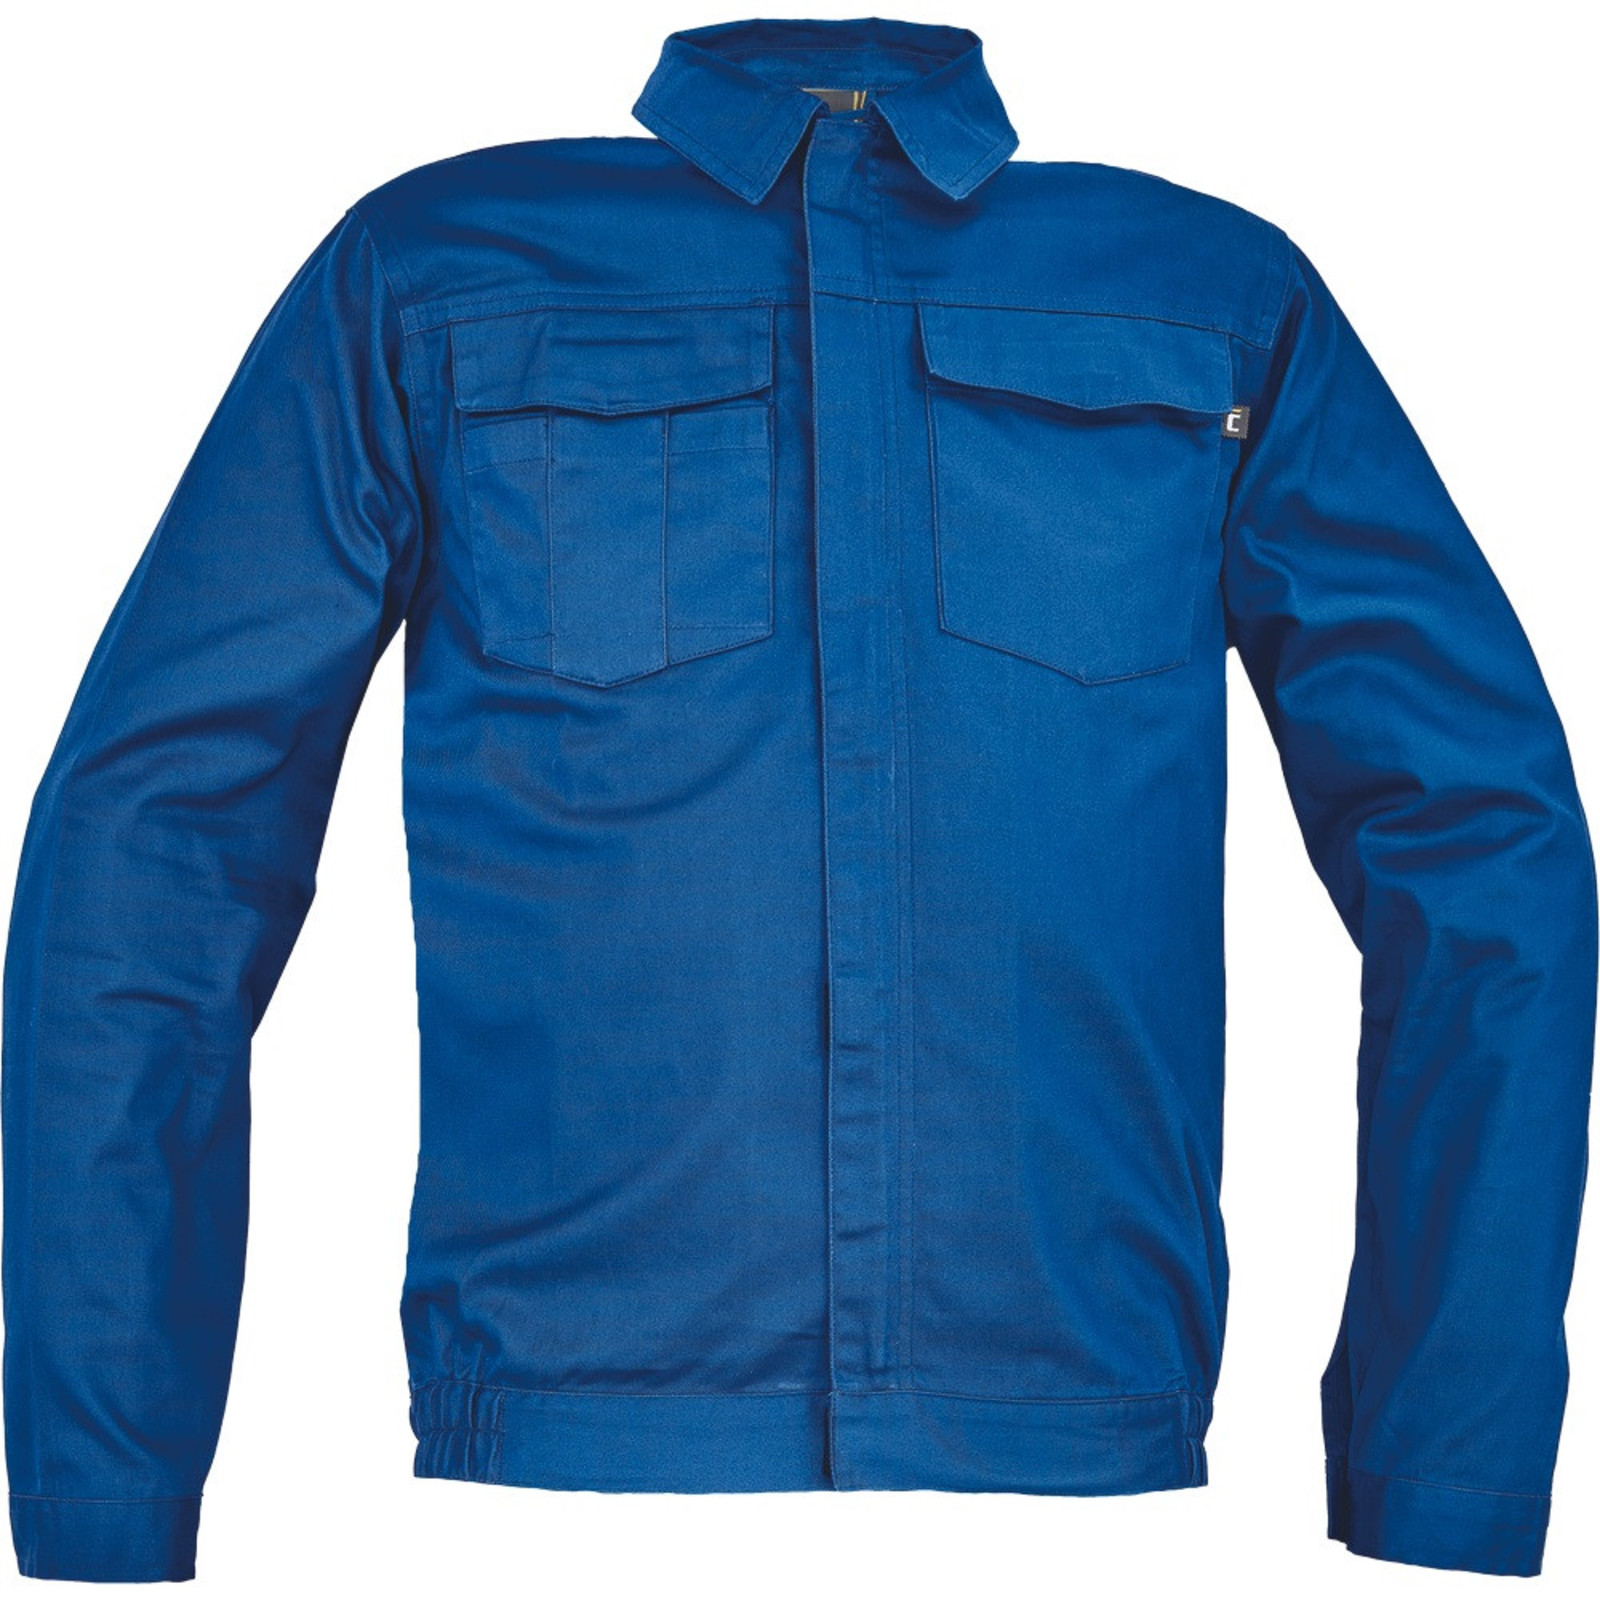 Pánska ľahká pracovná bunda Cerva Ciudades Basic Zaragoza - veľkosť: 48, farba: royal blue